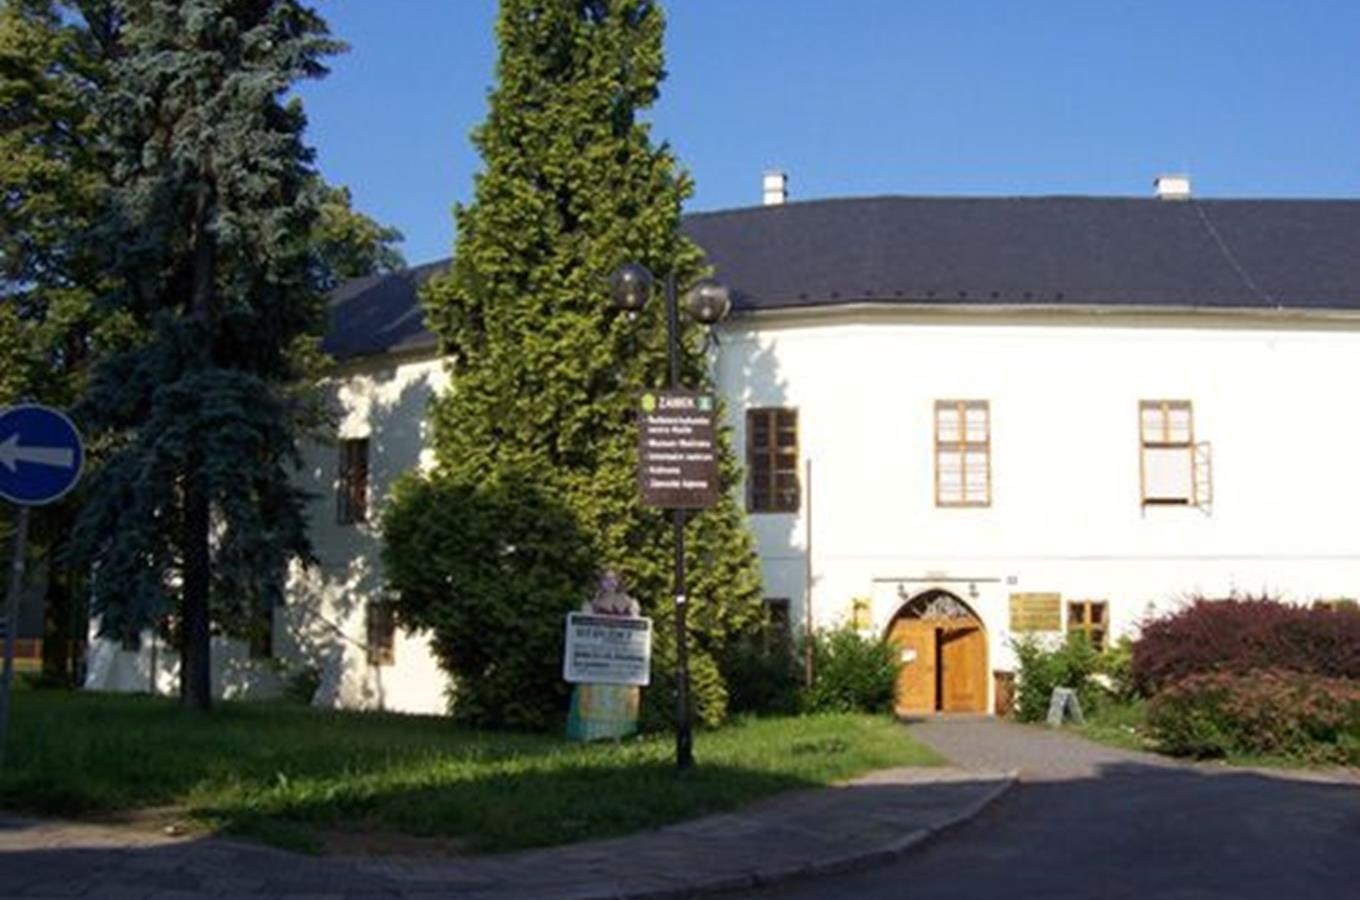 Muzeum Hlučínska